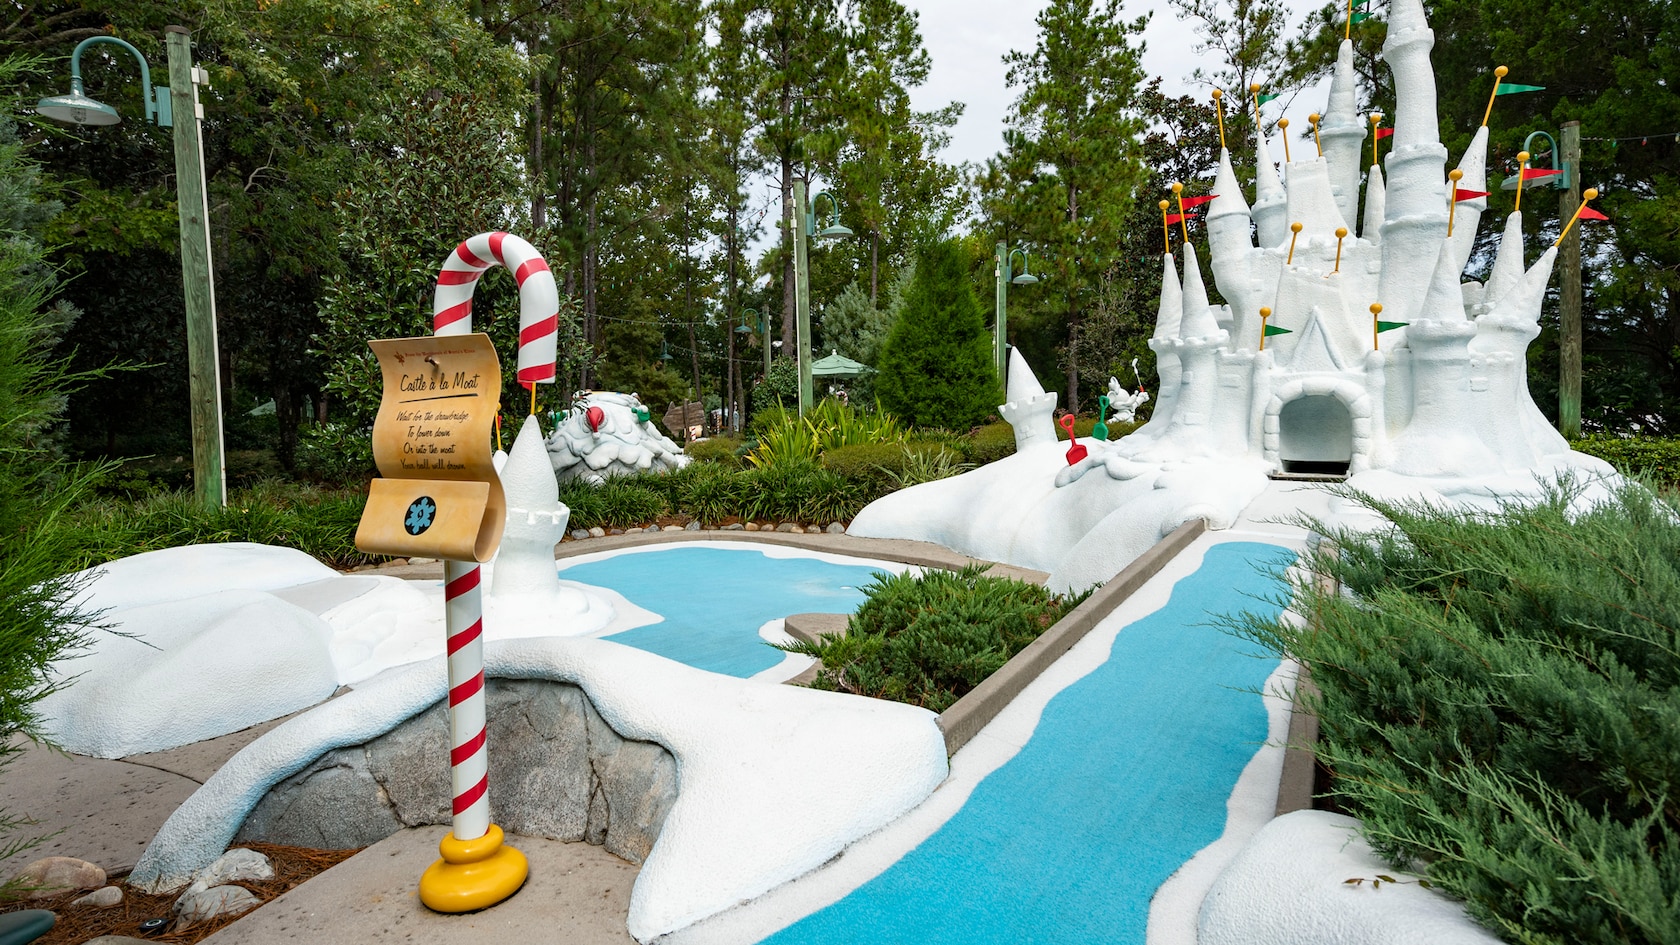 Um campo de minigolfe com o Cinderella Castle construído com neve falsa no Disney's Winter Summerland Miniature Golf Course